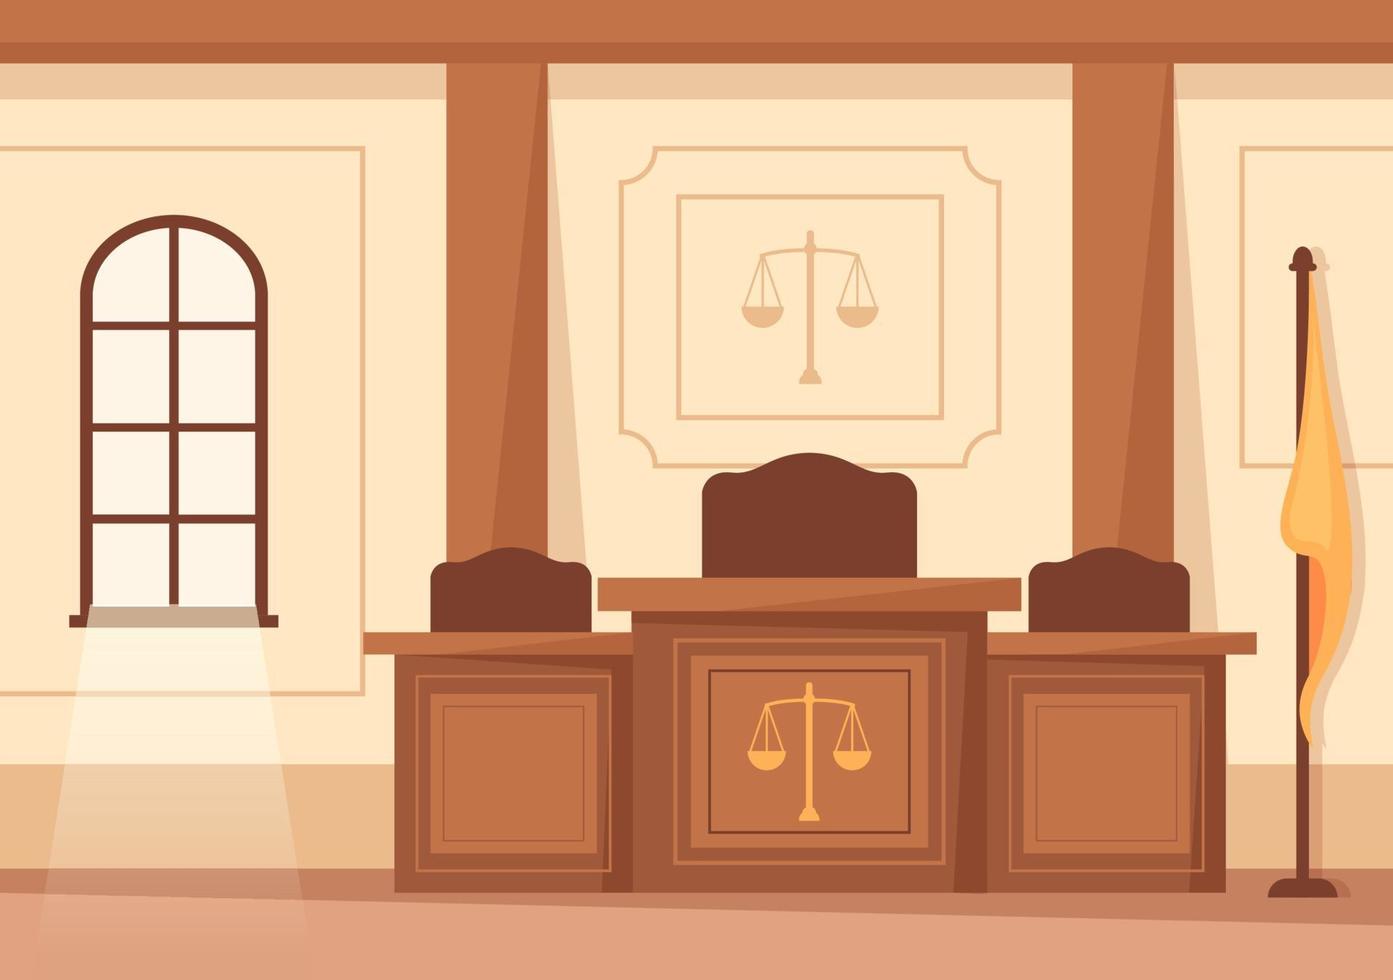 interior de la sala del tribunal con mesa de juez o jurado, bandera y martillo de juez de madera en ilustración de diseño de caricatura plana vector